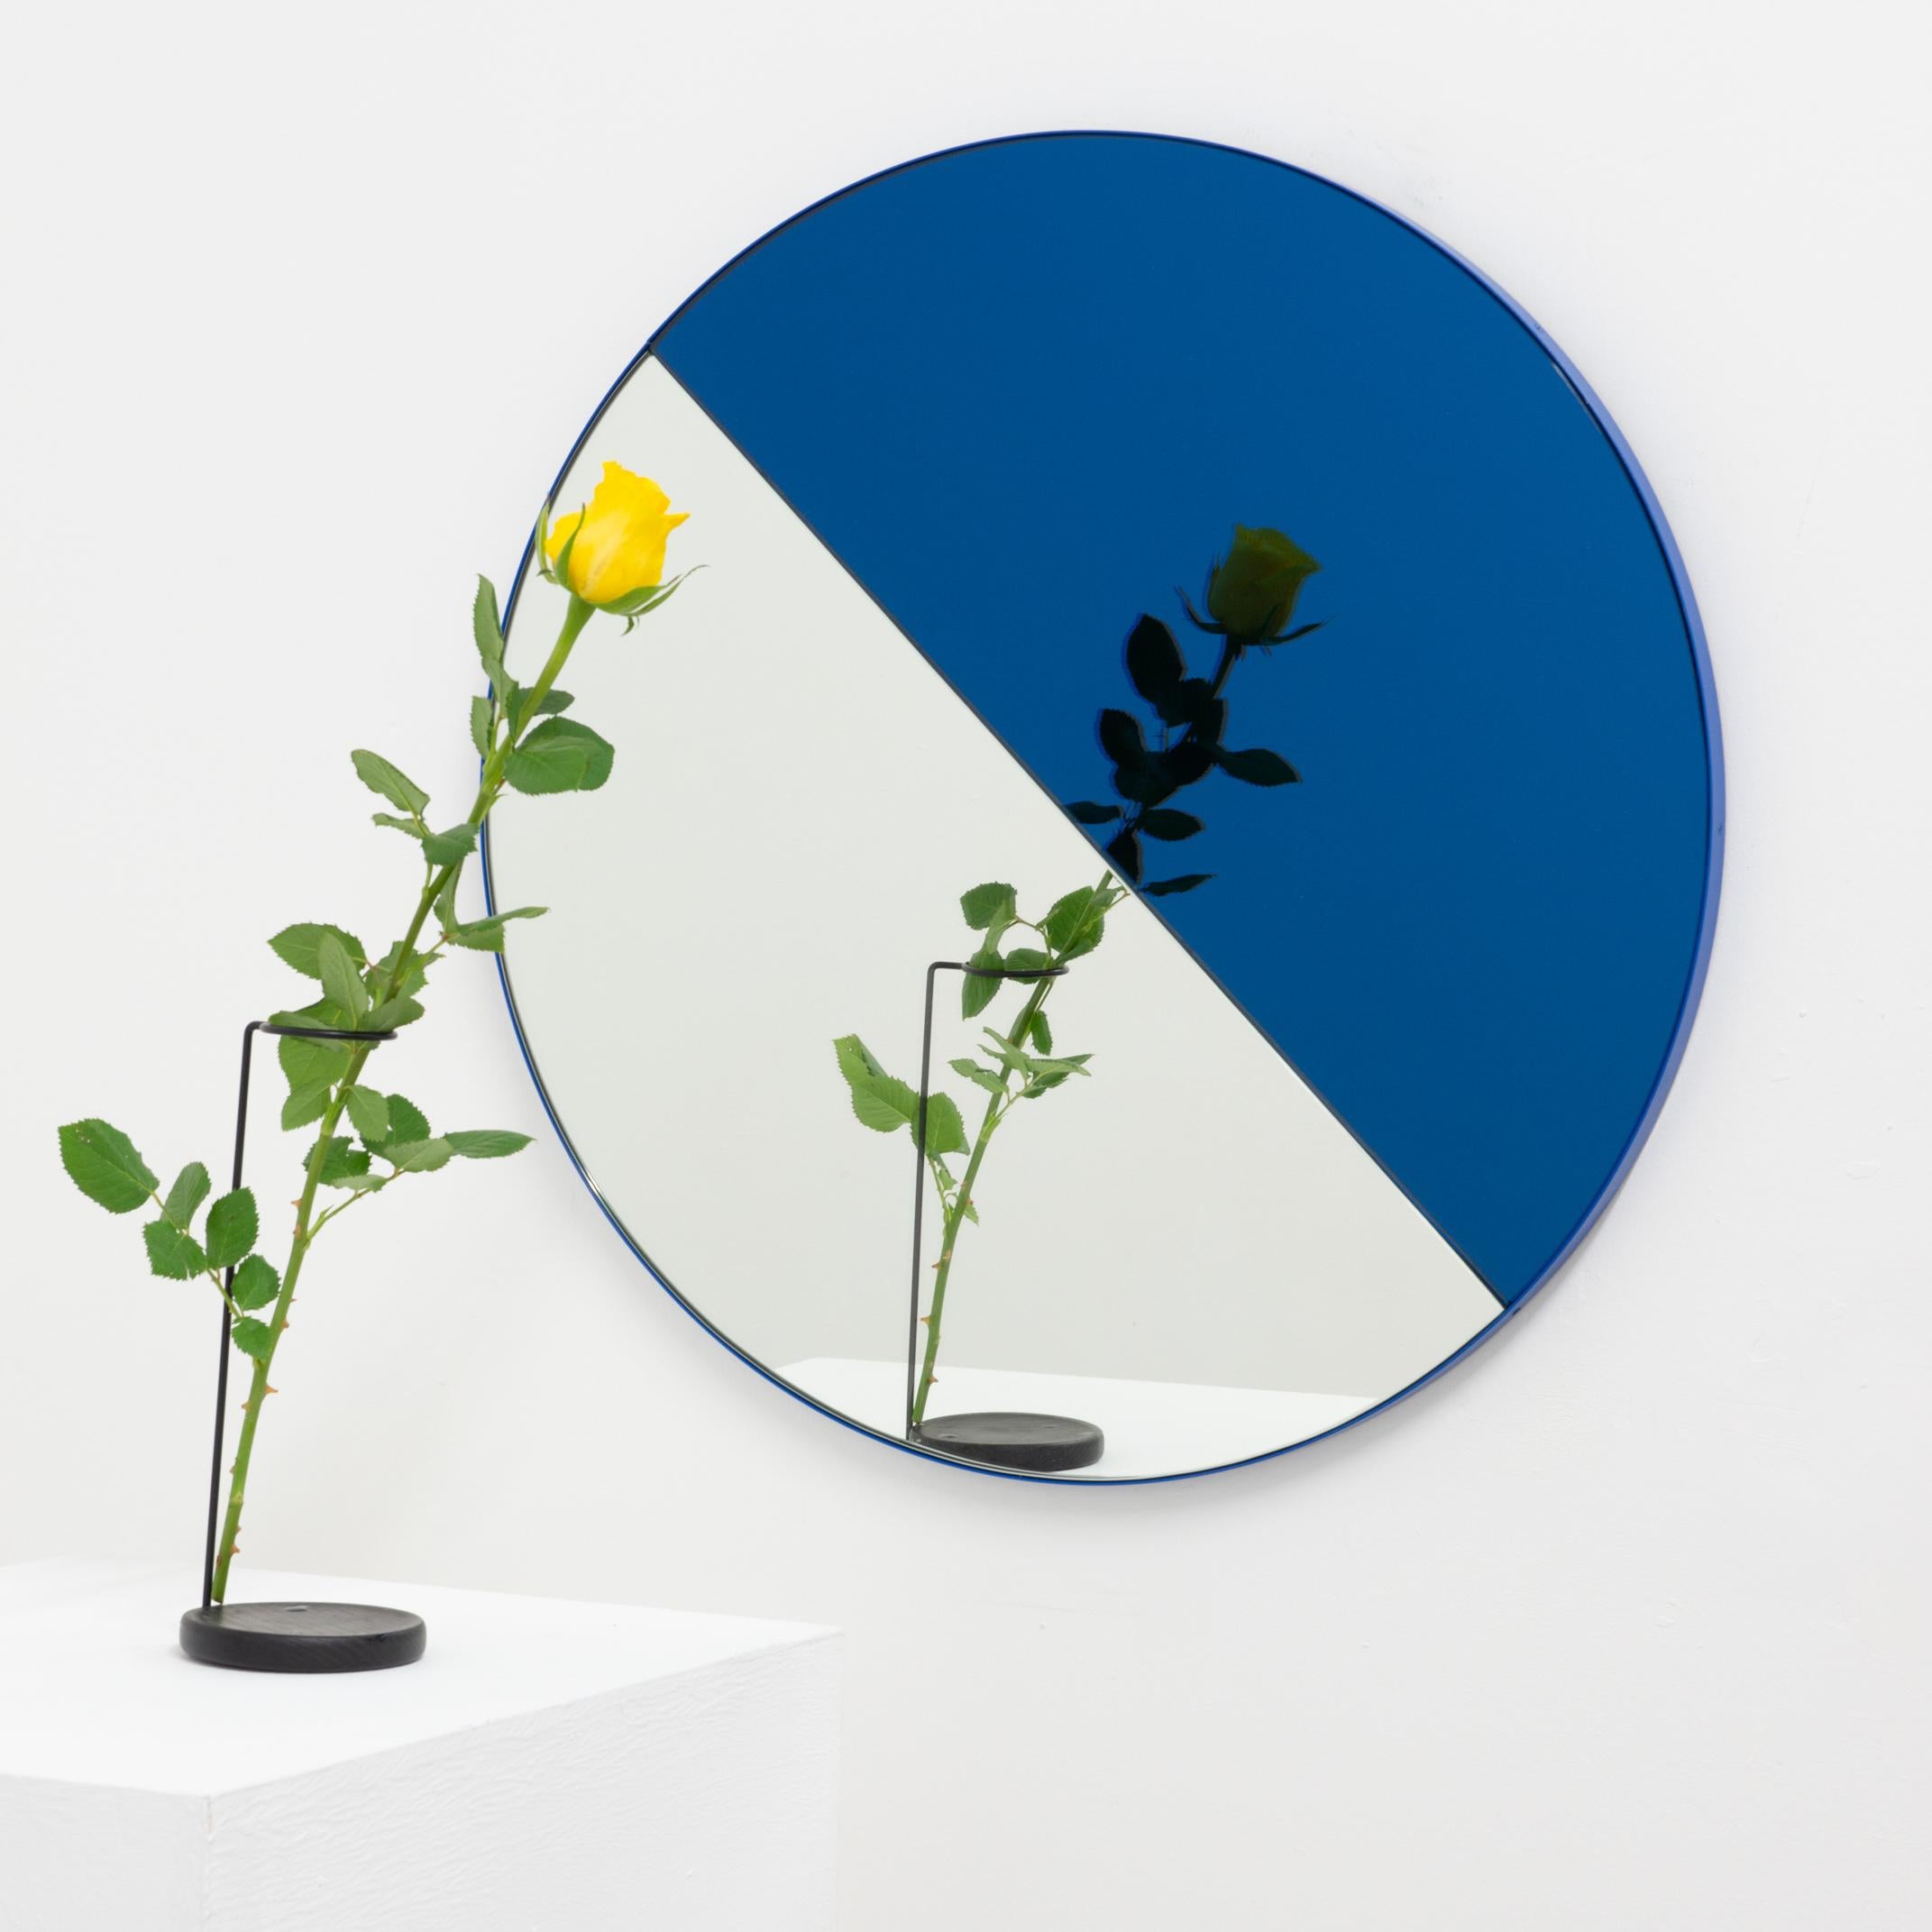 Britannique Orbis Dualis Contemporary Blue and Silver Round Mirror with Blue Frame, Large (Miroir rond contemporain bleu et argent avec cadre bleu) en vente